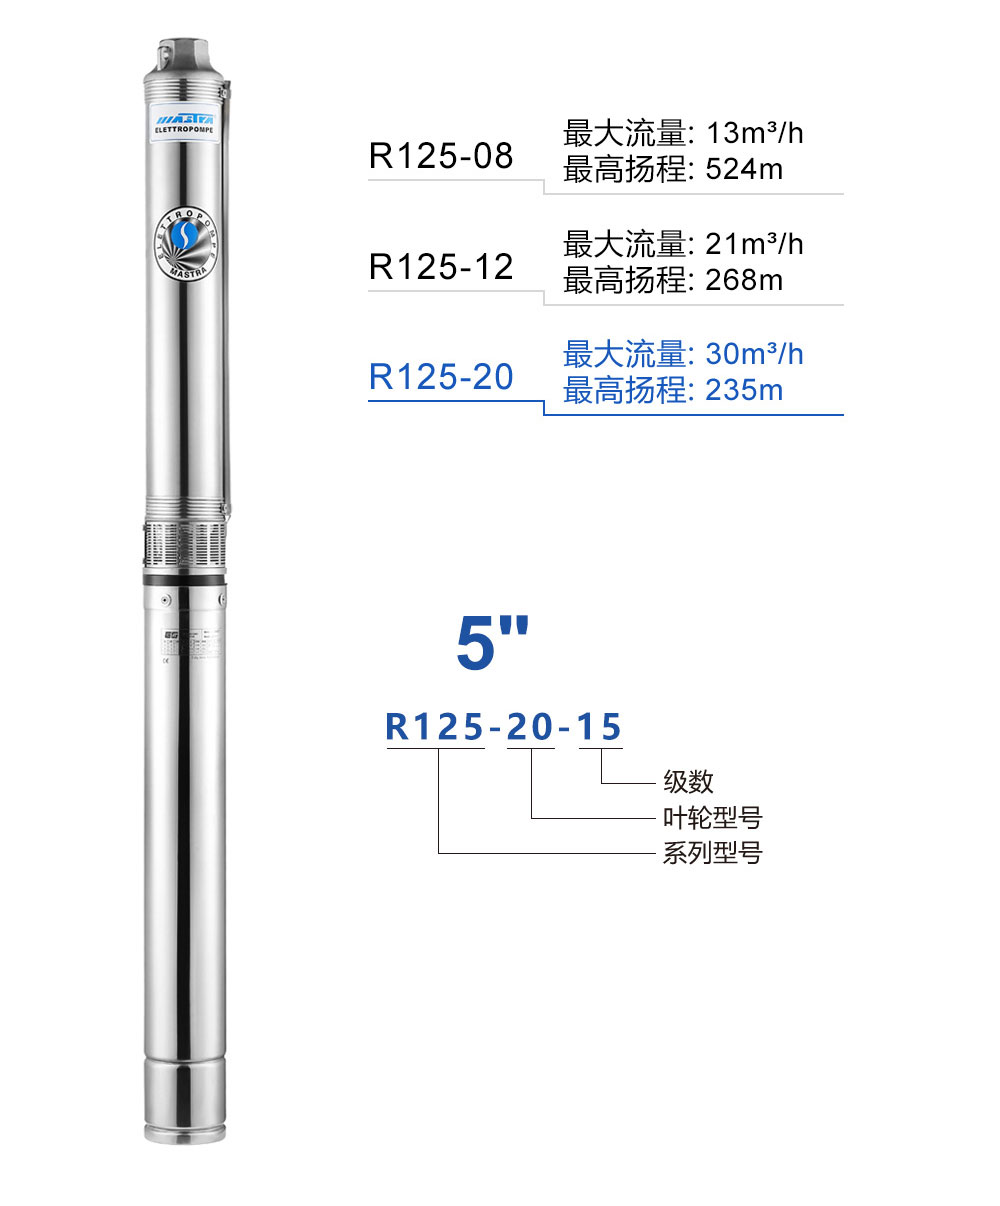 R125-20井用潜水泵产品介绍